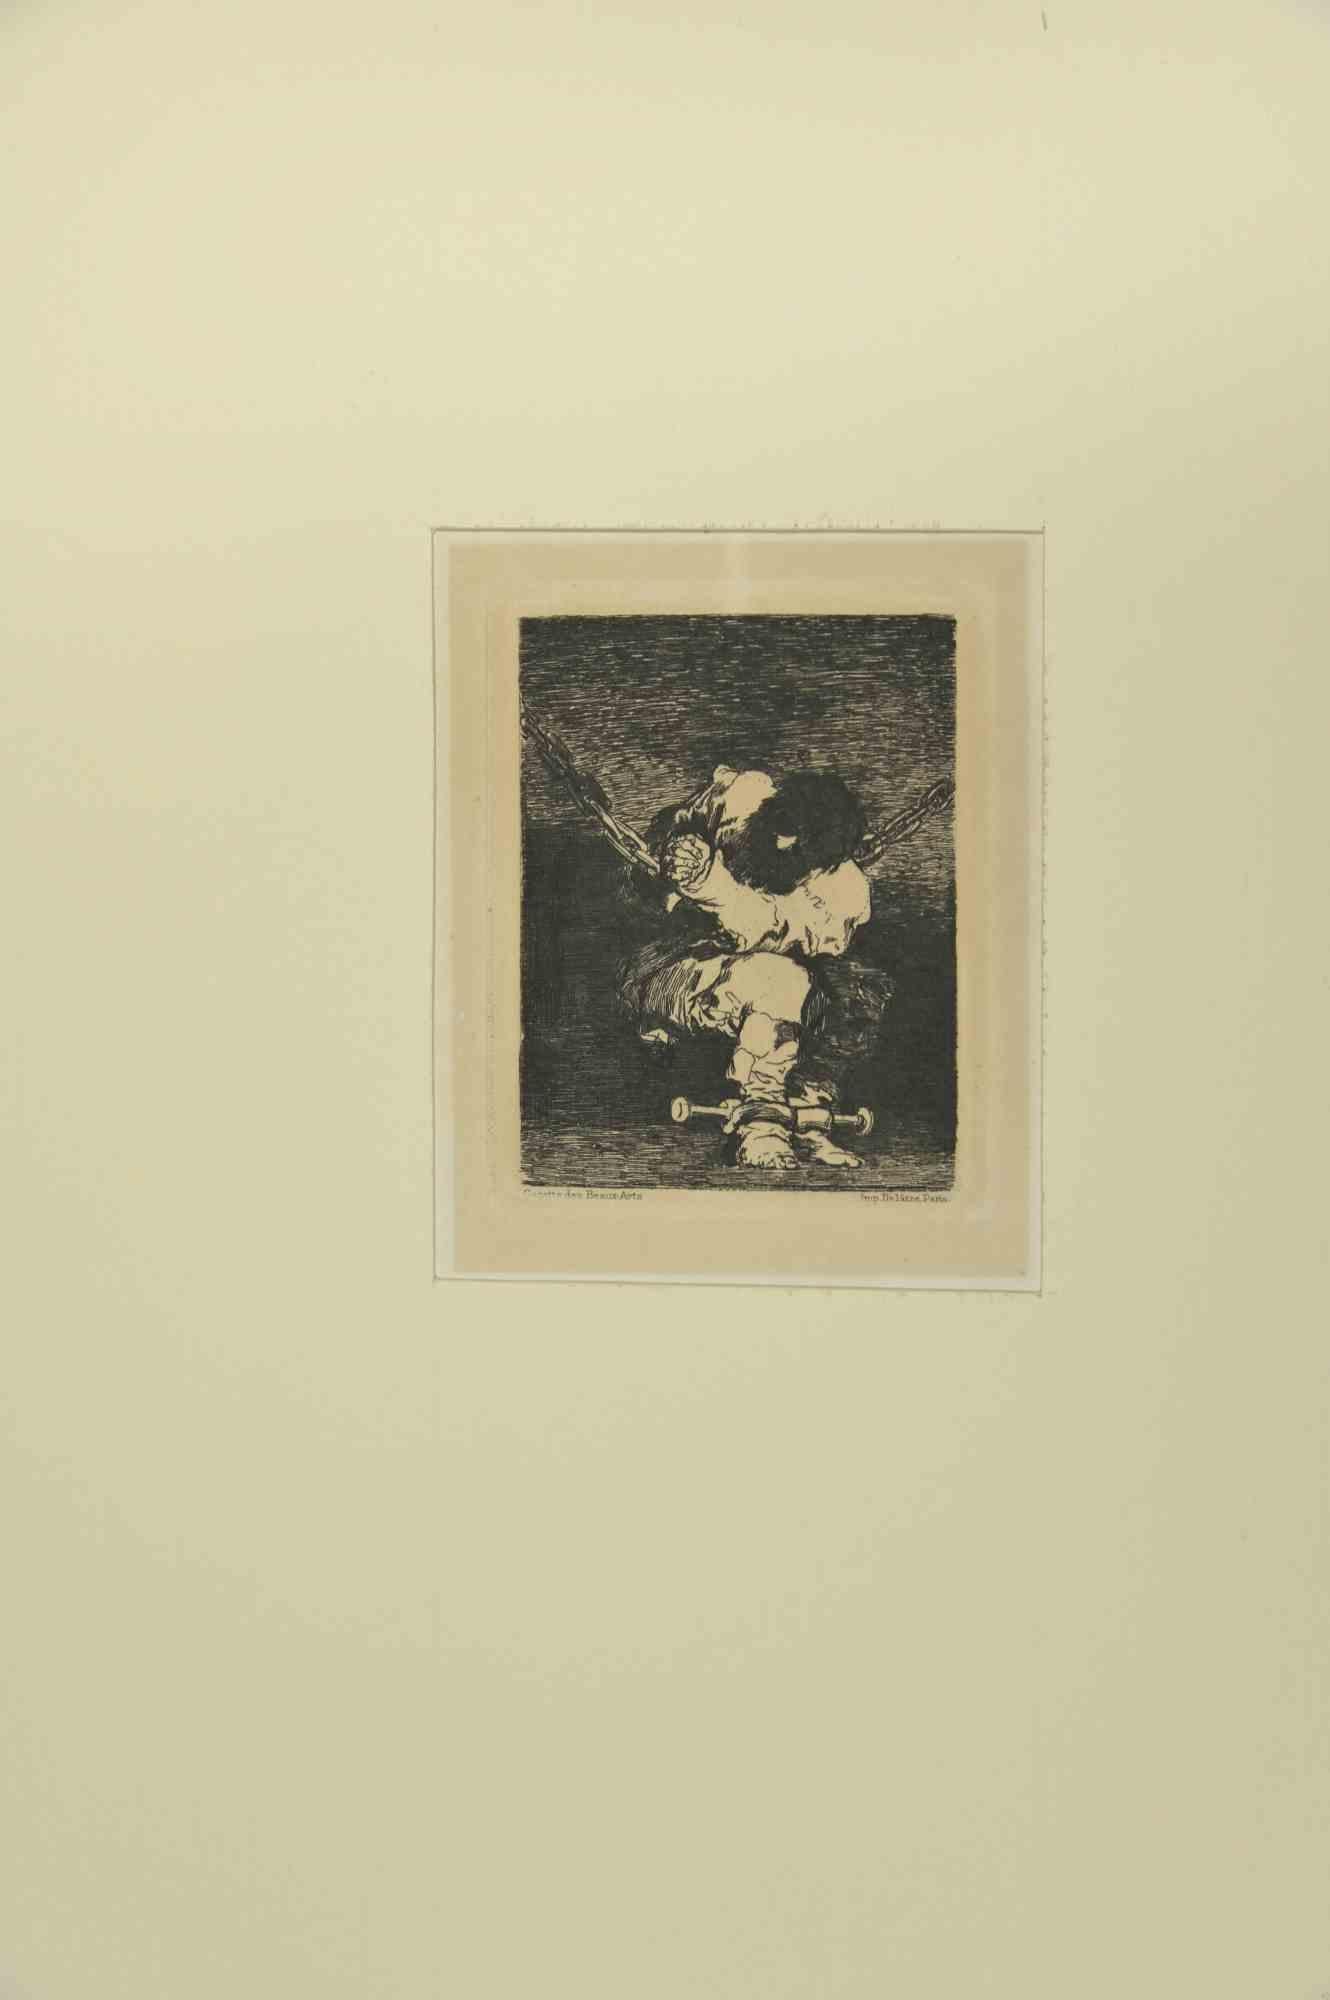 La garde est aussi barbare que le crime (Tan barbara la seguridad como el delito) est une œuvre d'art réalisée par Francisco Goya y Lucientes, 1867. 

Paris : Delâtre, 1867.

Gravure et burin.

cm. 10.5x8.4.Feuille 21x16.2.

Excellente épreuve du